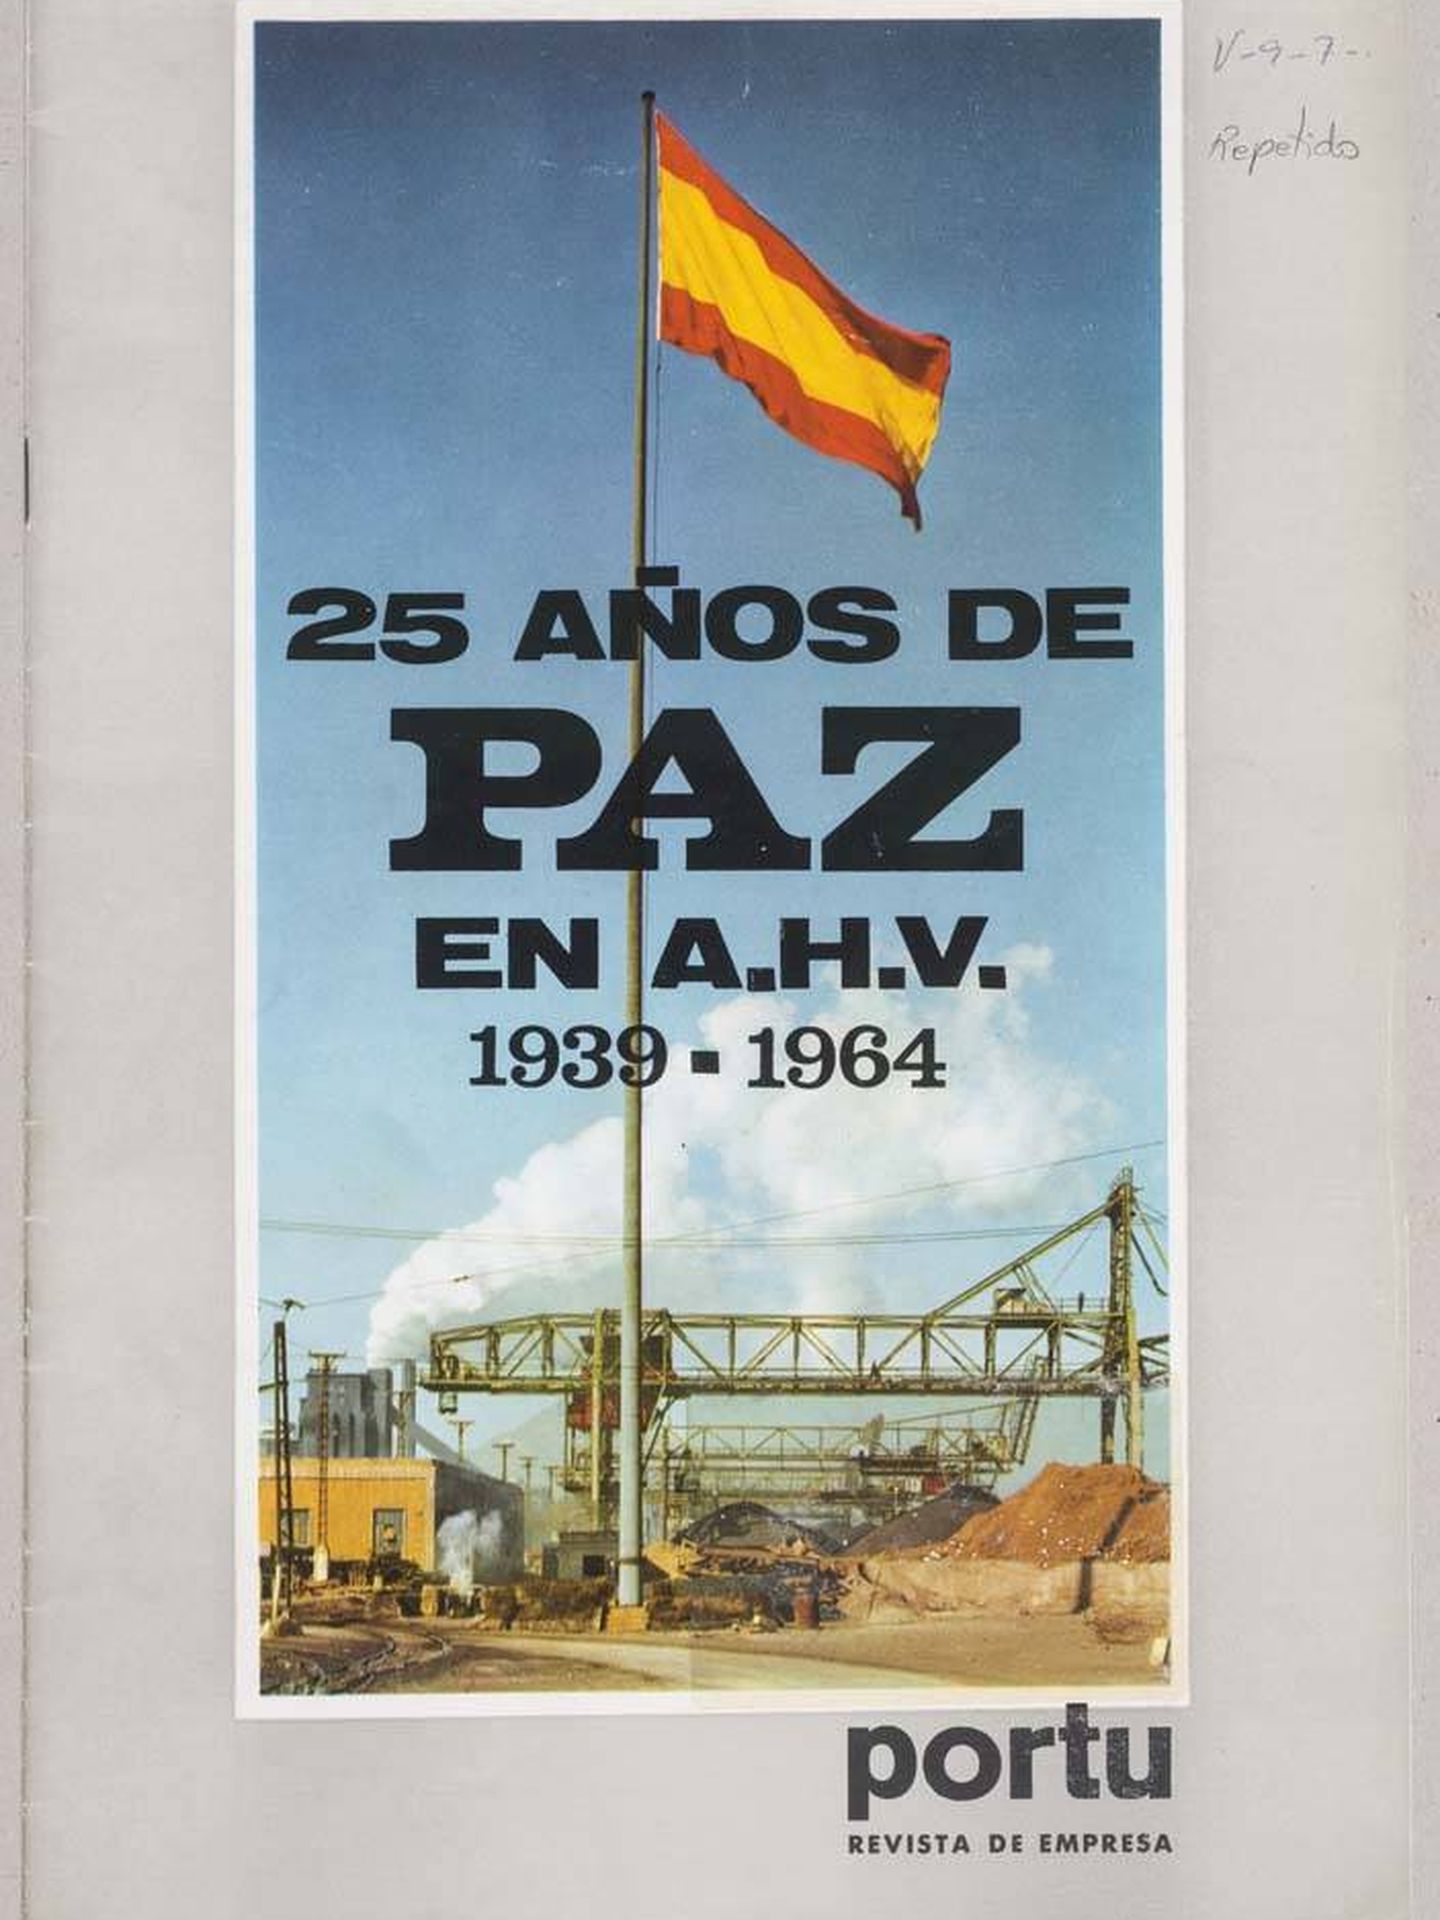 Sello conmemorativo de los 25 años de paz de la dictadura.